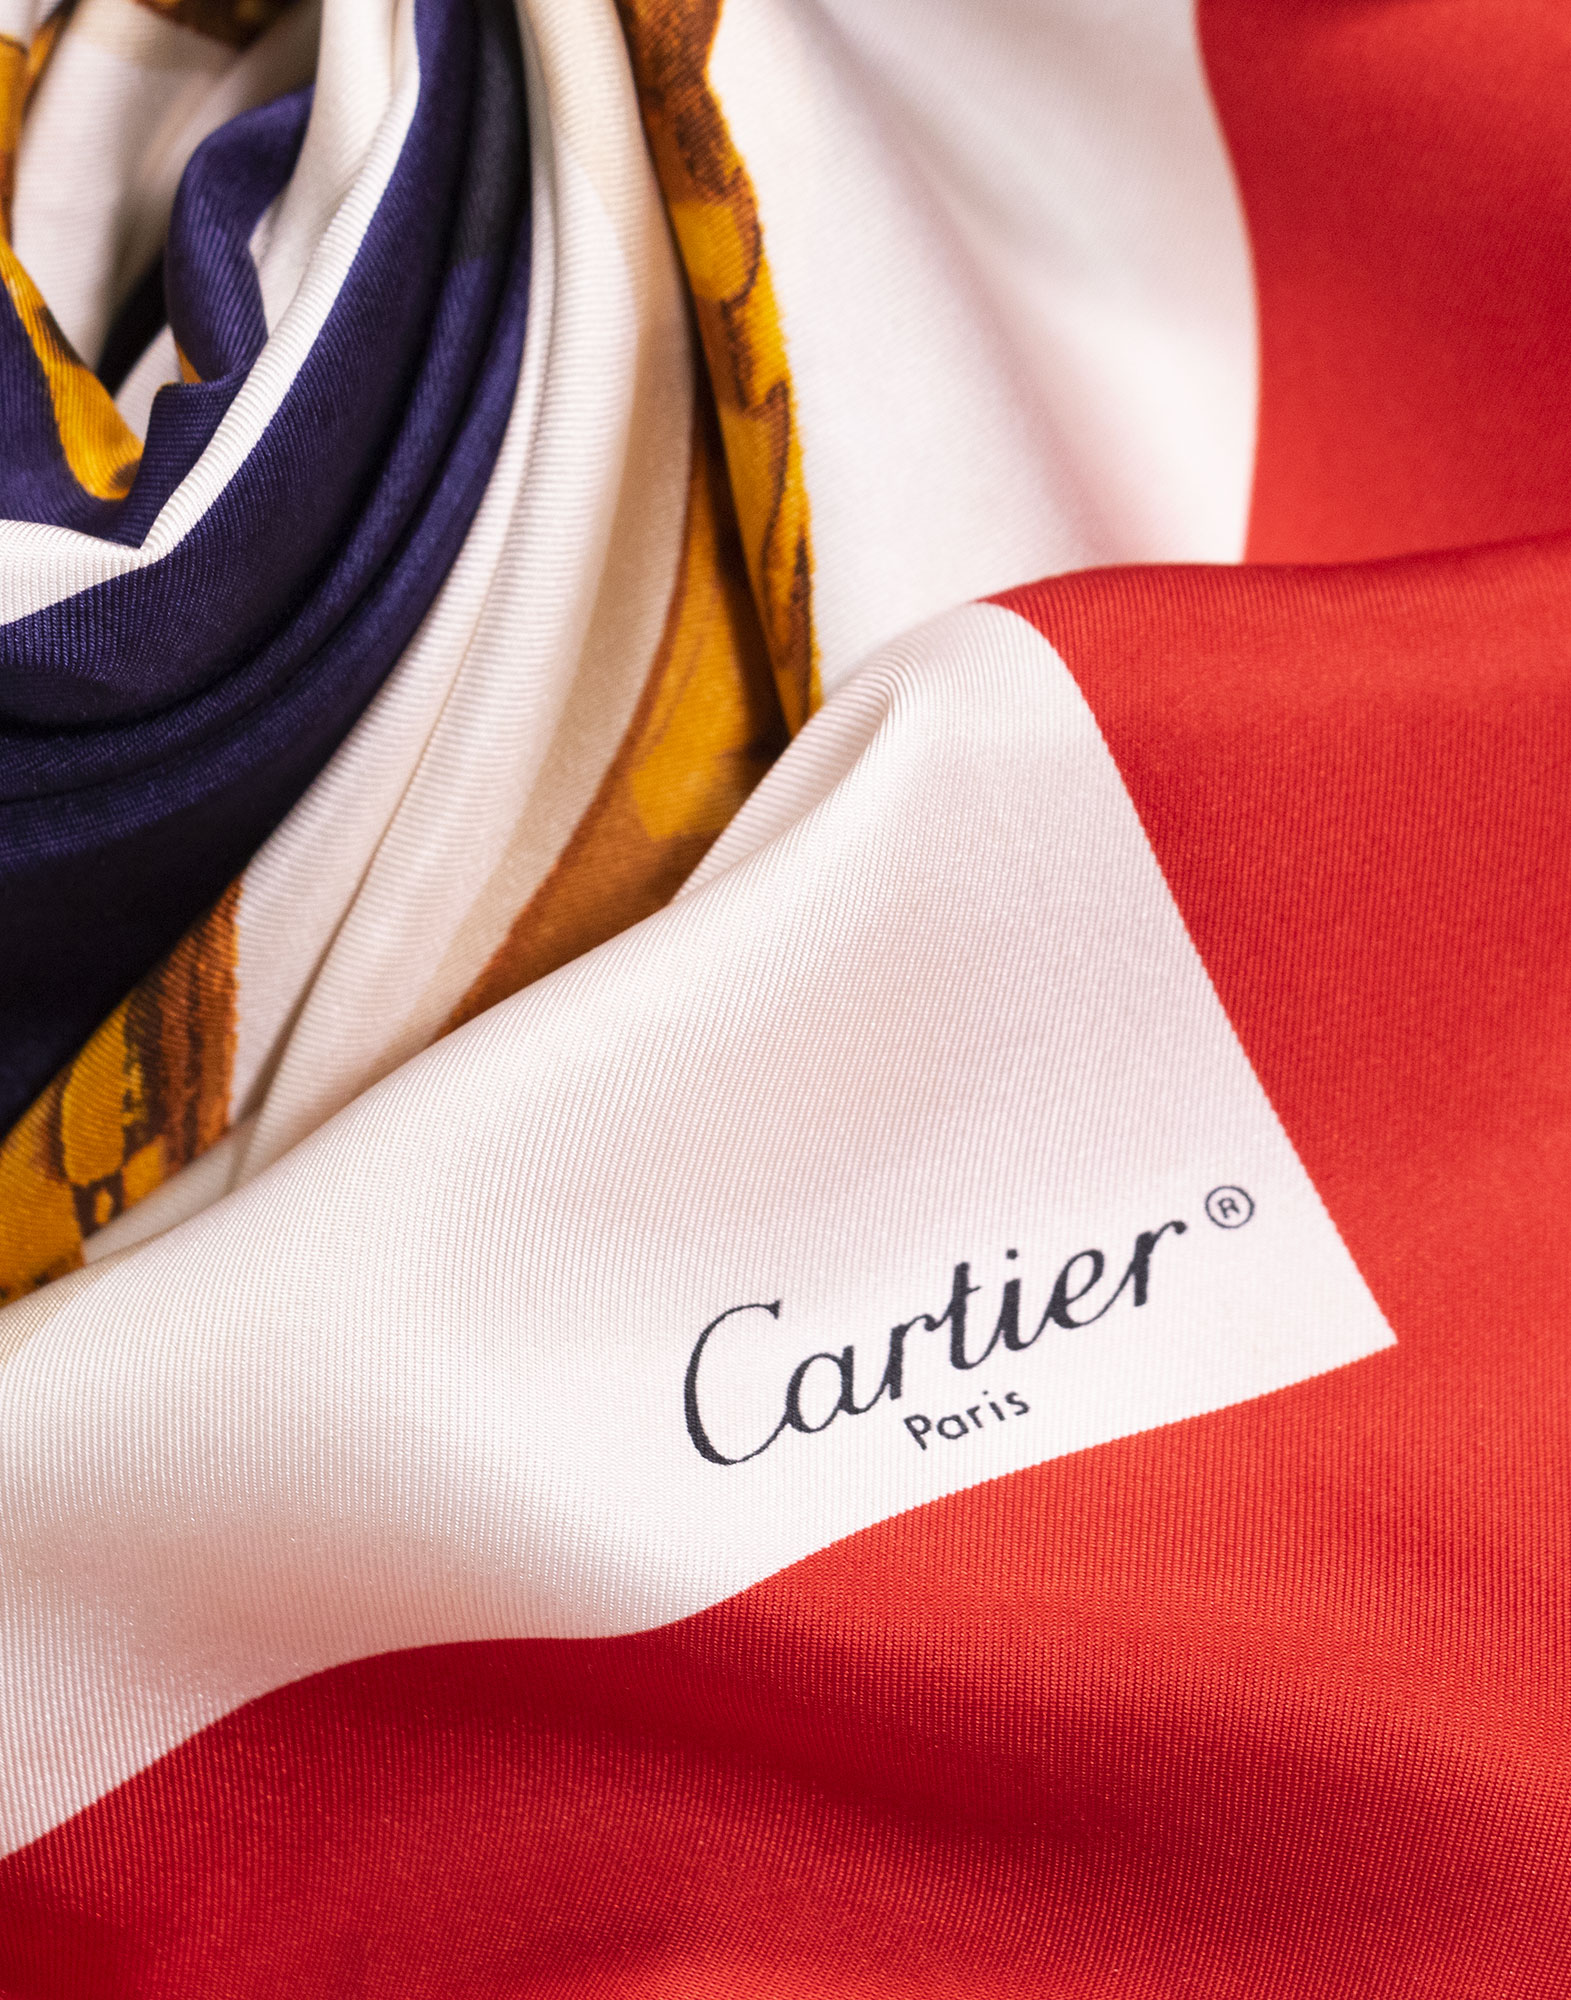 Must de Cartier - Foulard in seta